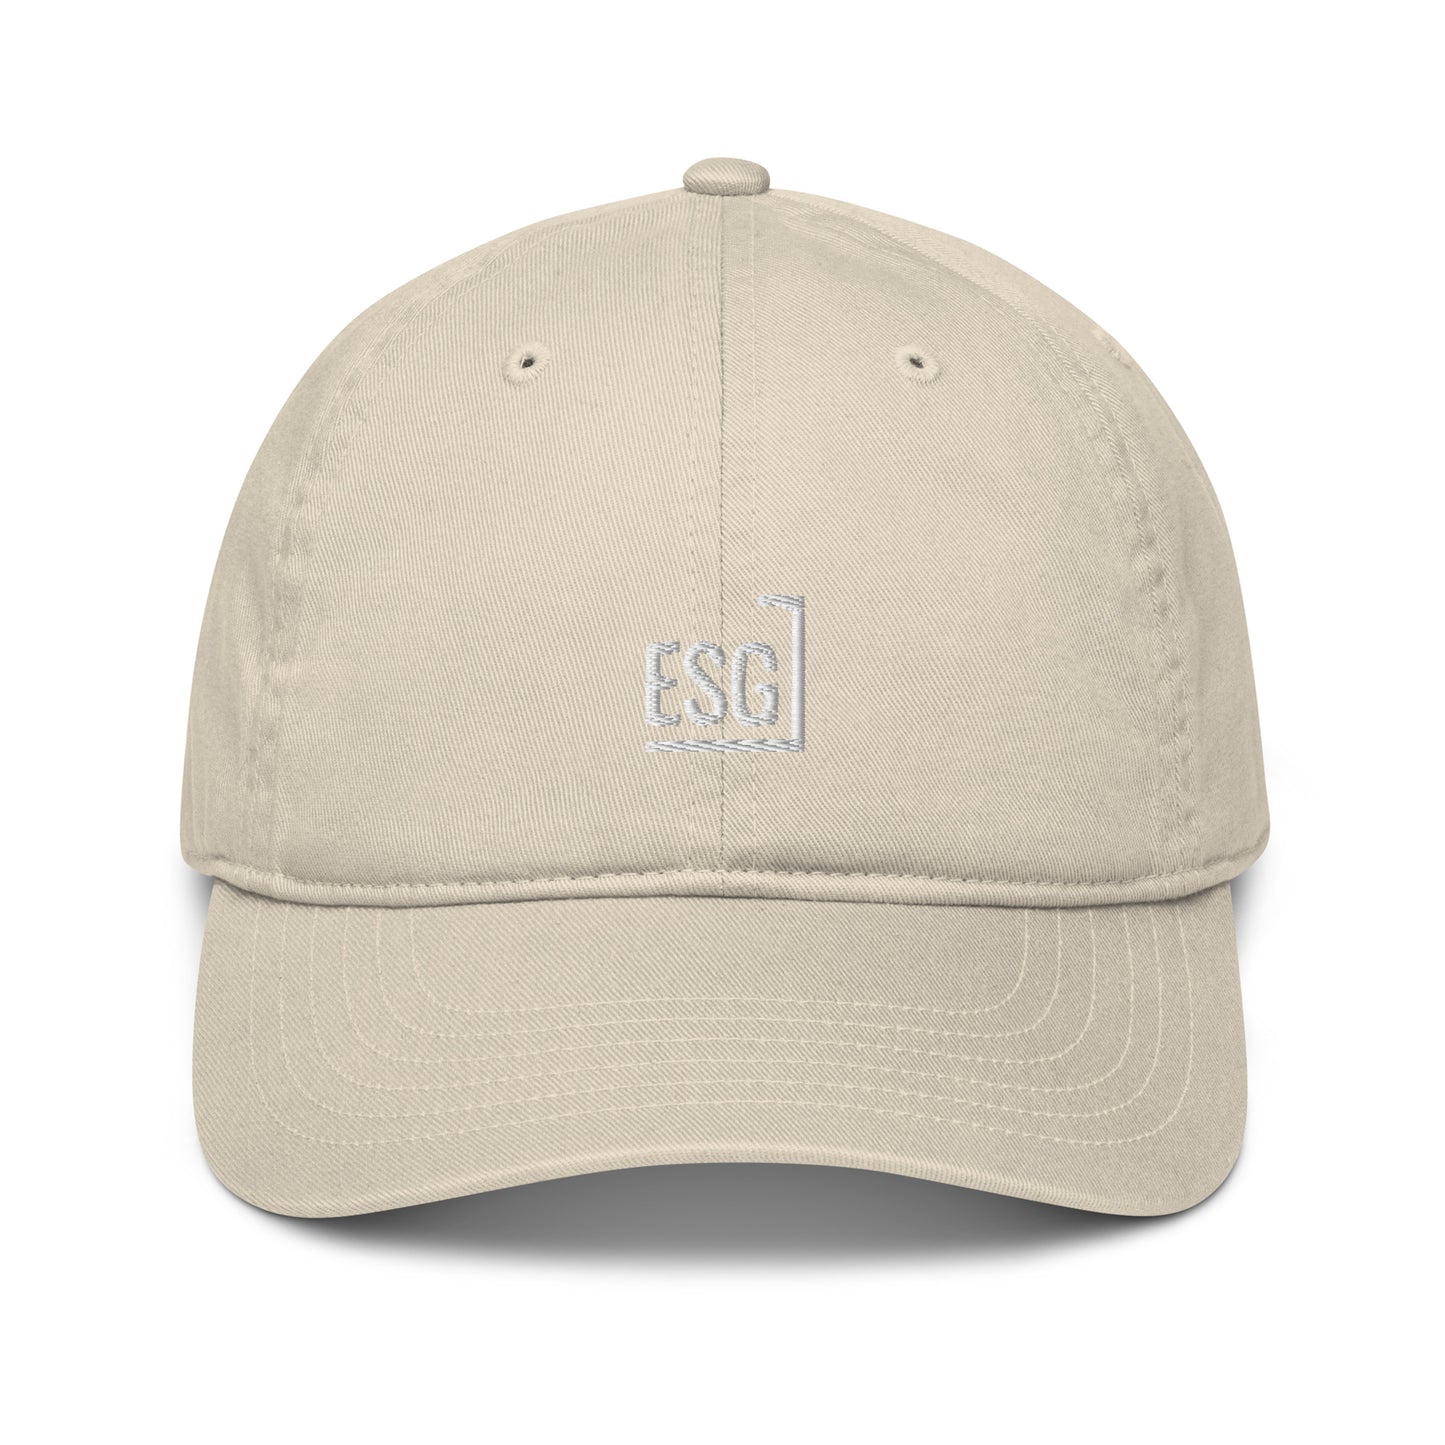 ESG hat